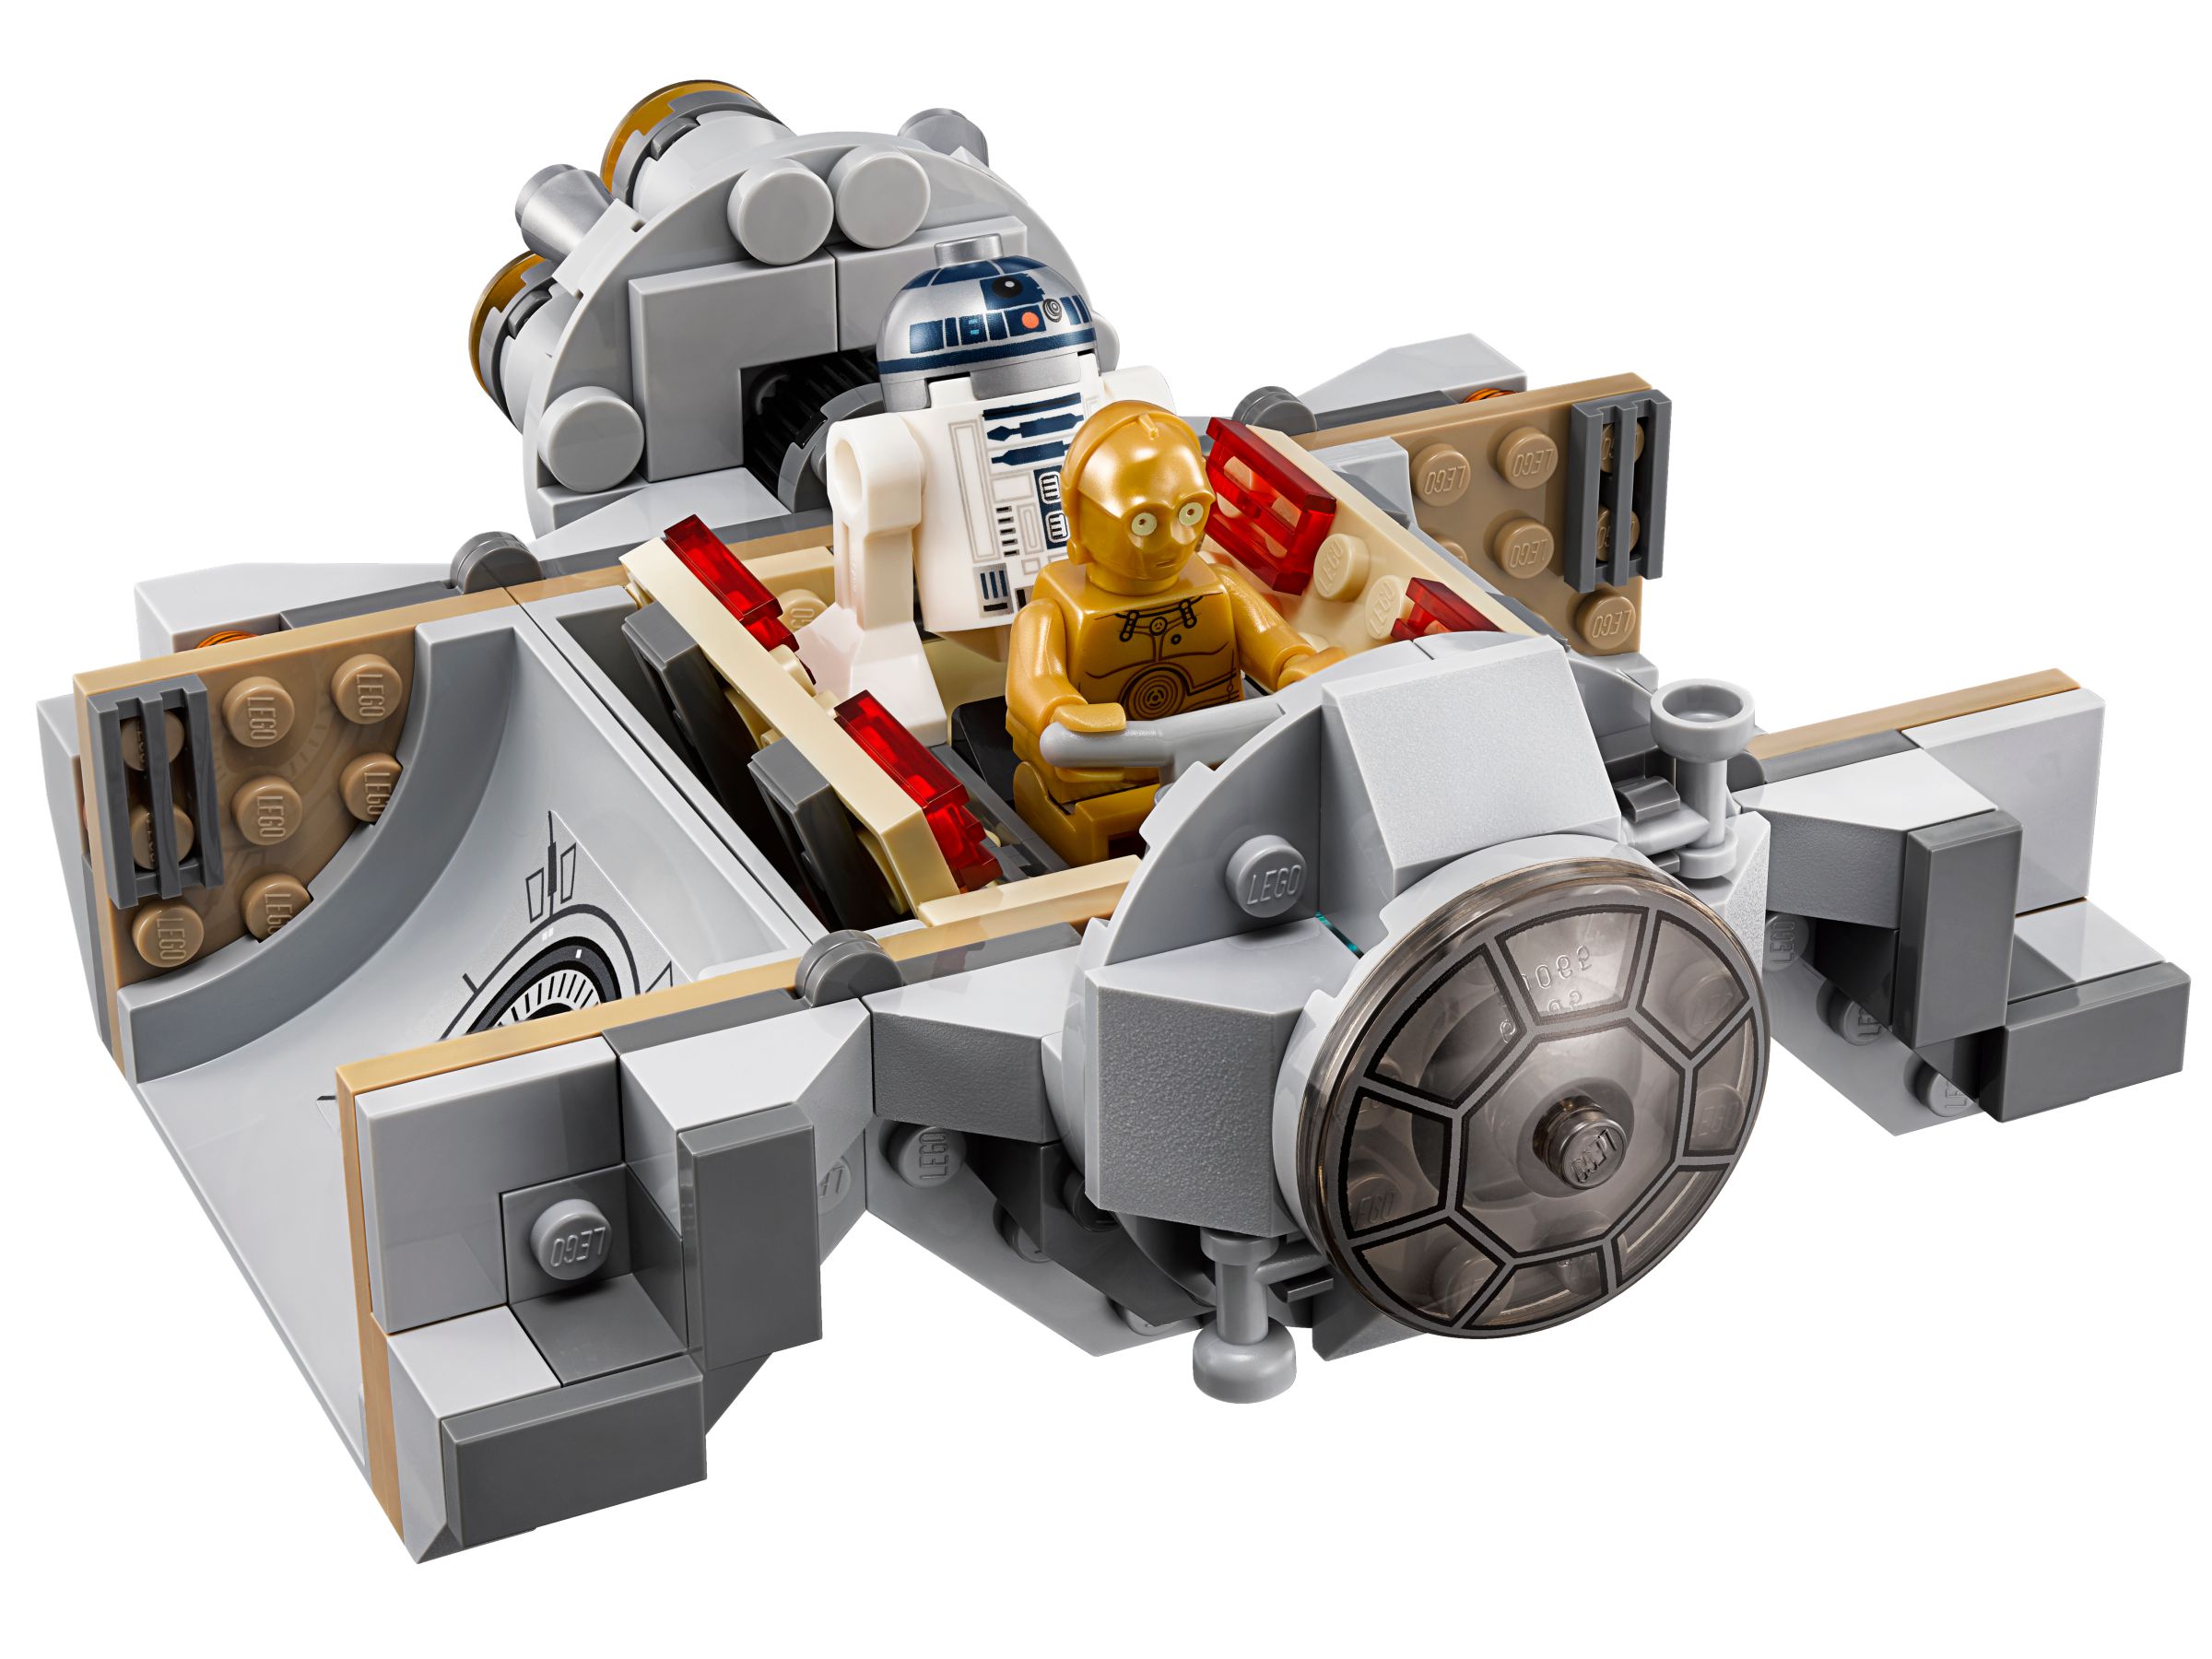 LEGO Star Wars 75136 Droid™ Escape Pod LEGO_75136_alt3.jpg